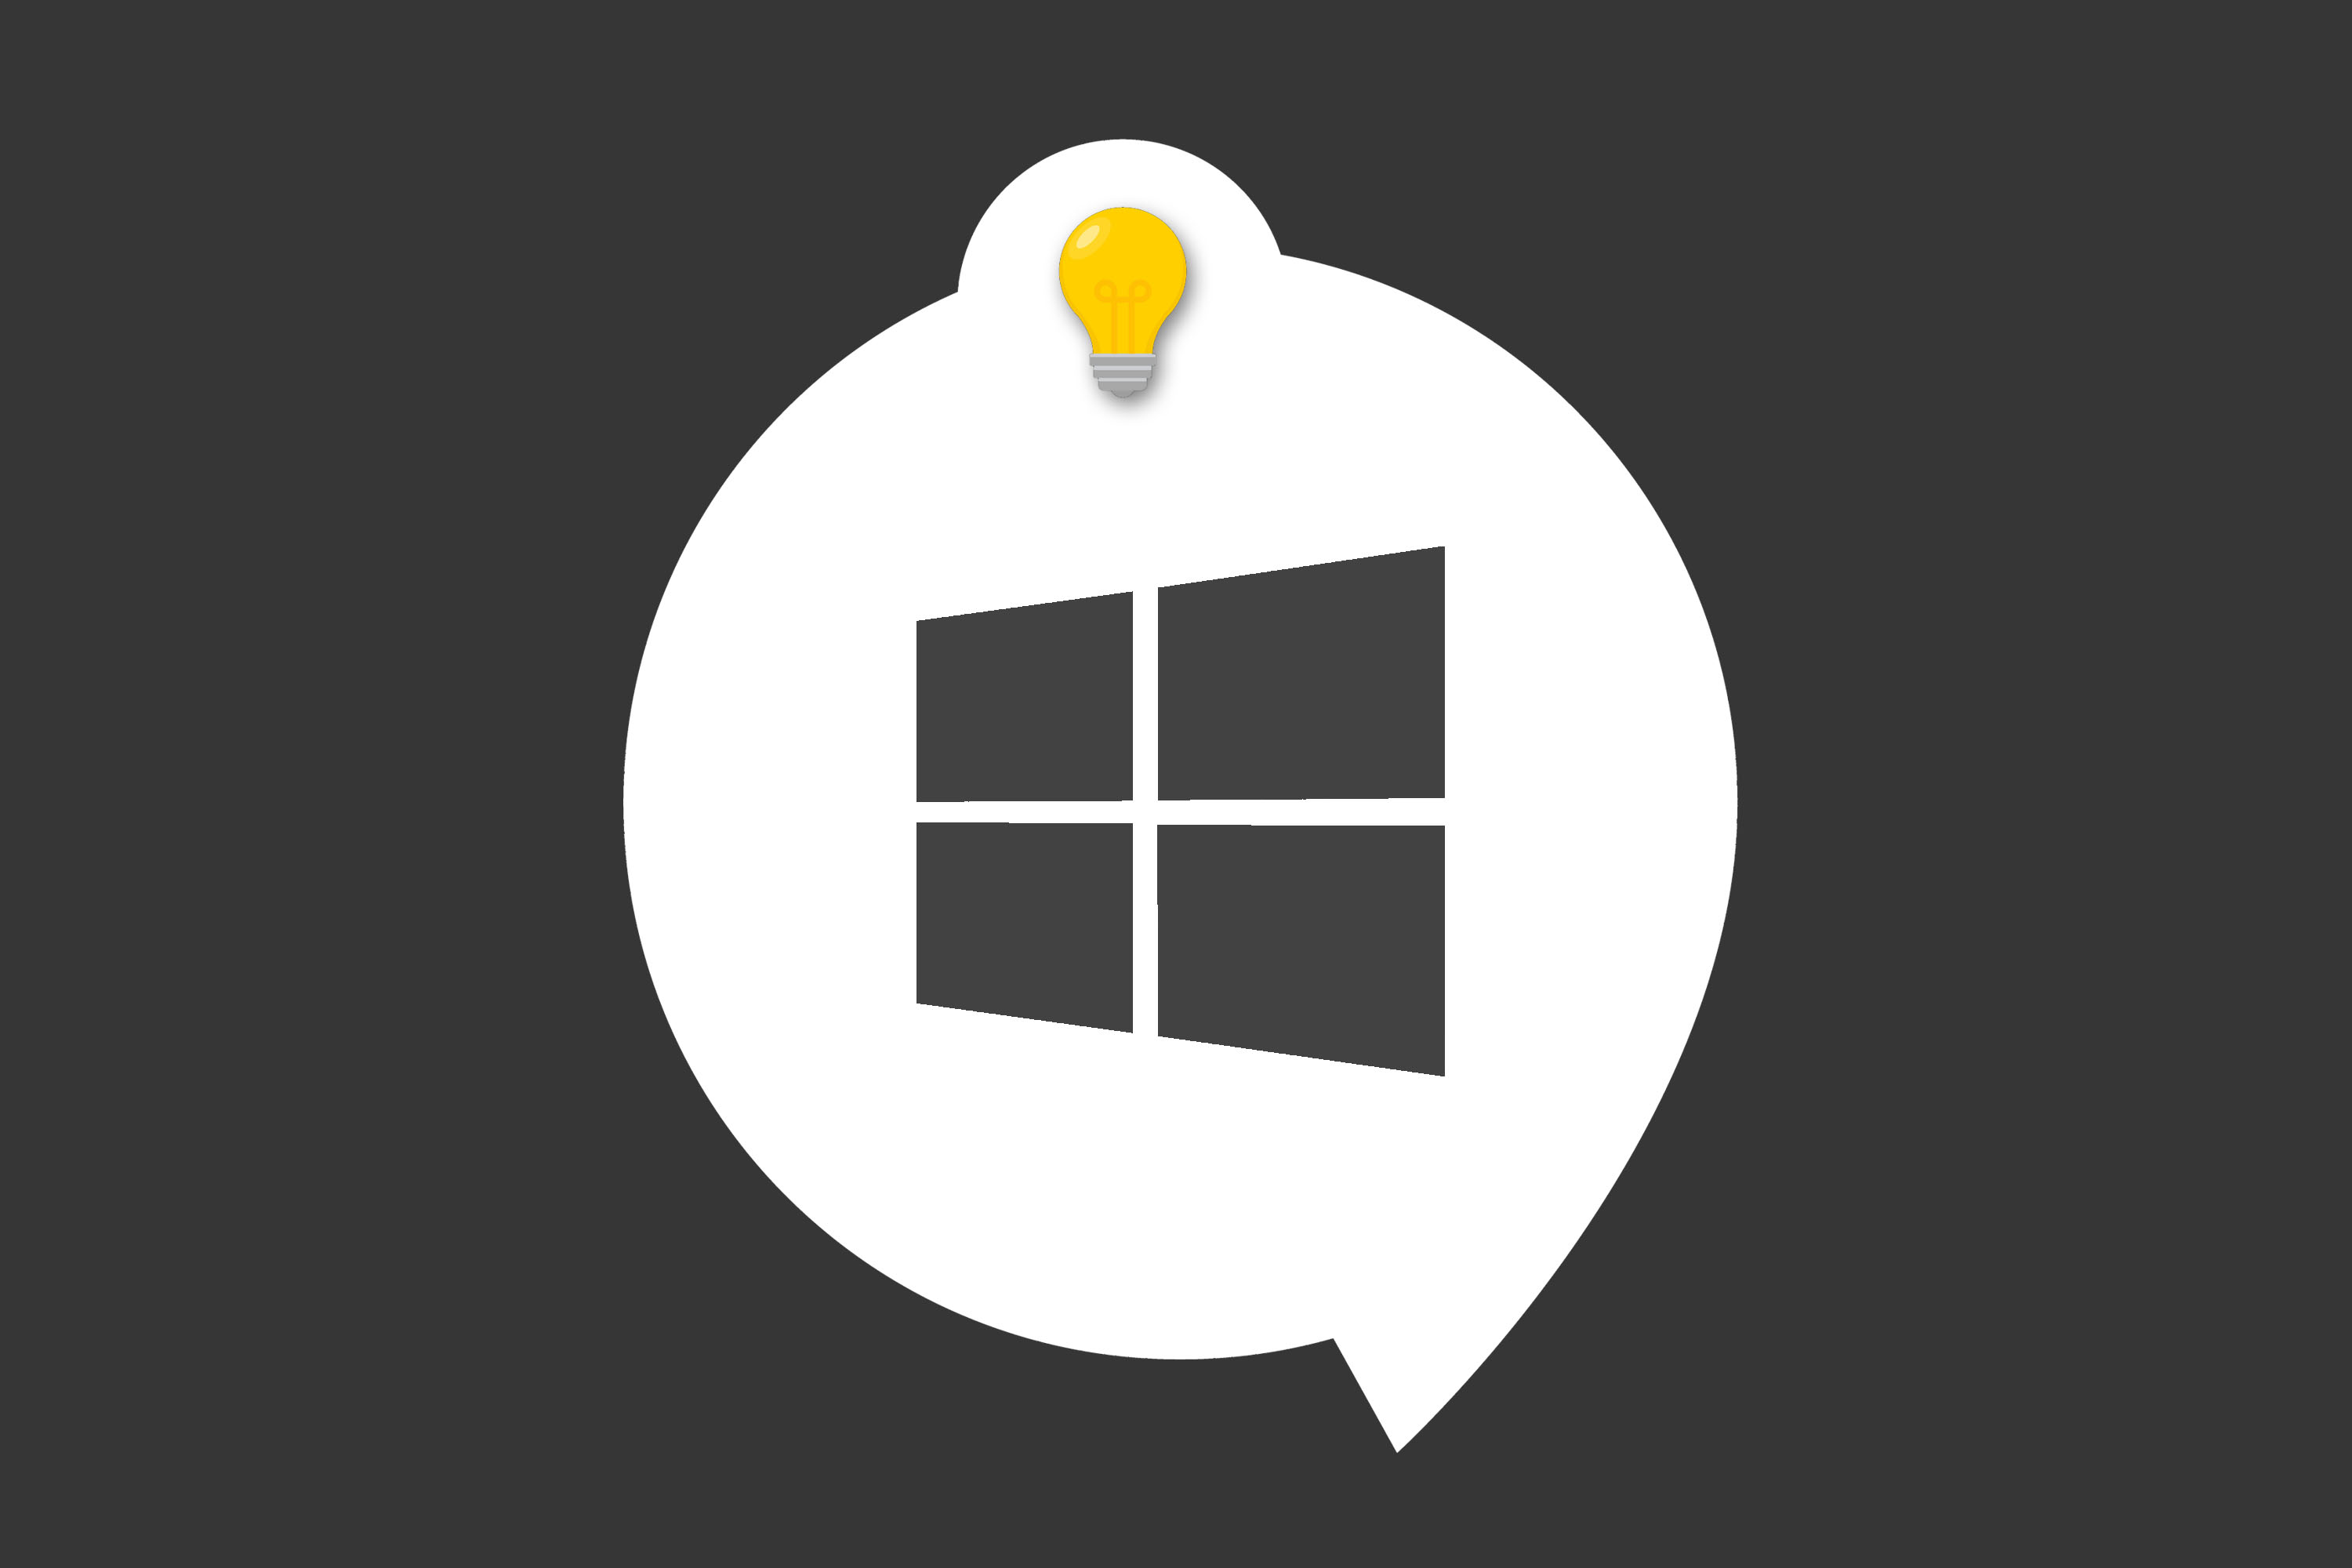 Vous pouvez lancer les programmes dans la barre des tâches via des raccourcis clavier sur Windows 10